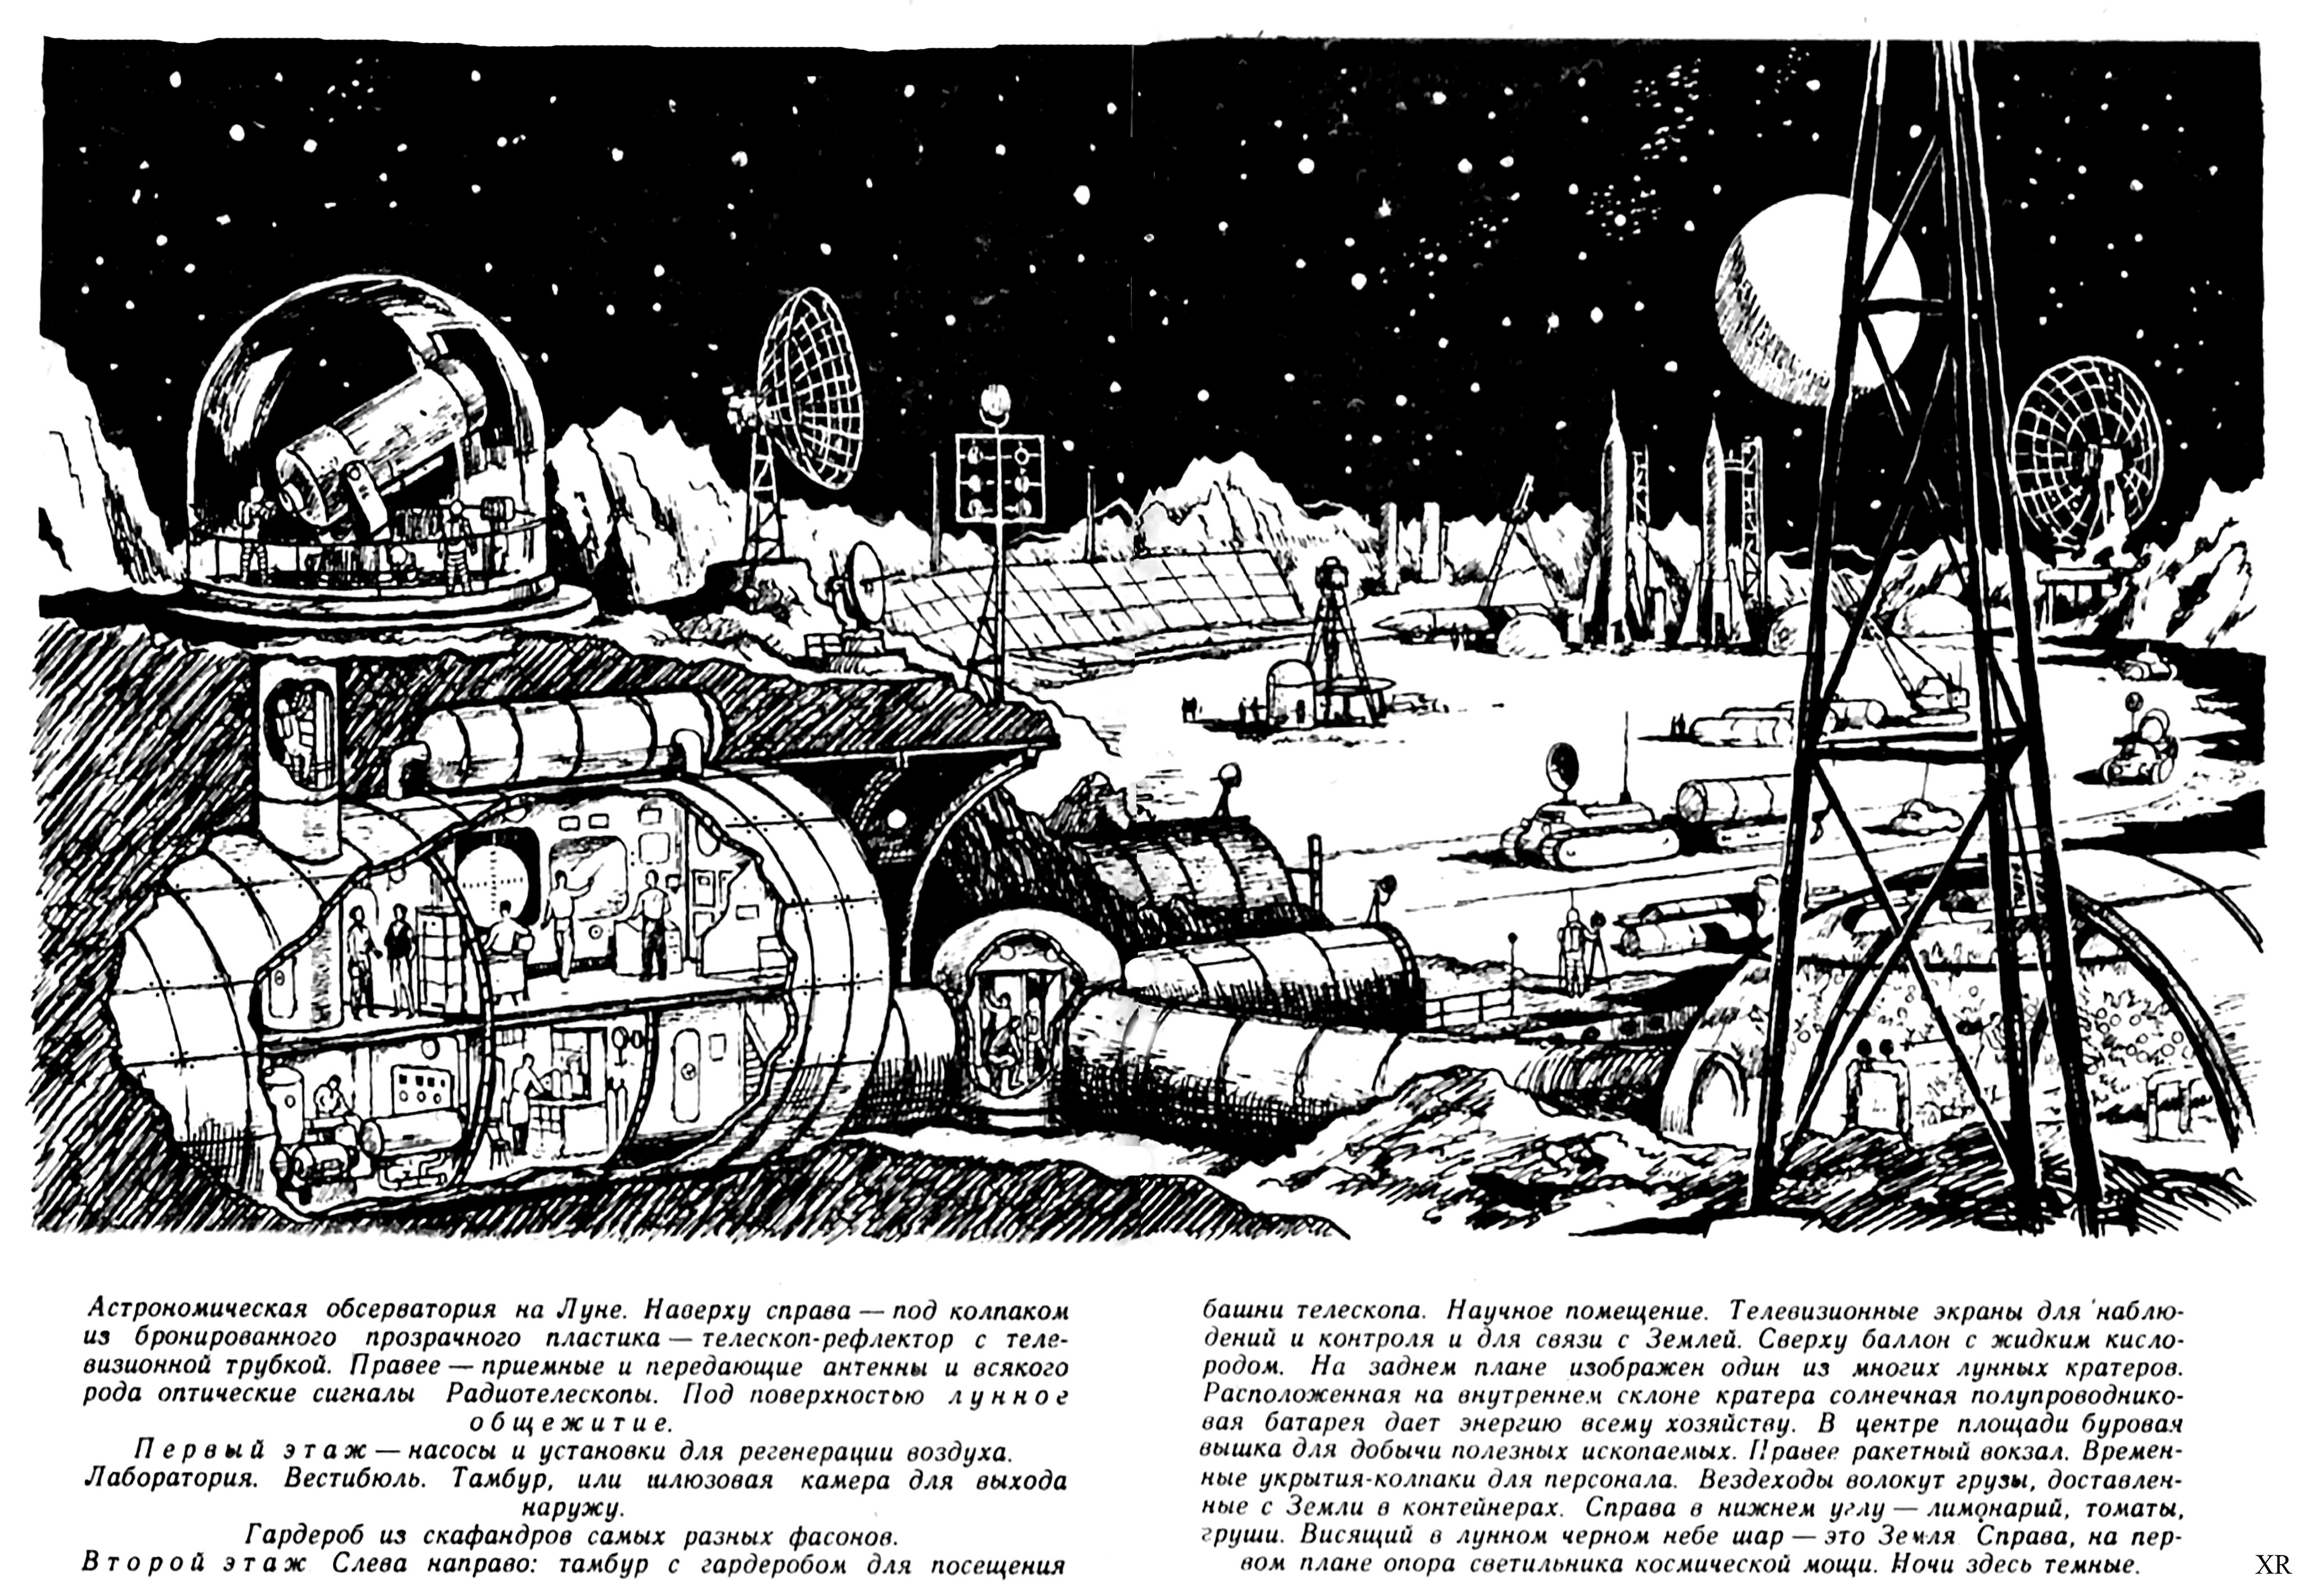 Sovětský článek o navrhované měsíční základně Zvezda z roku 1962.